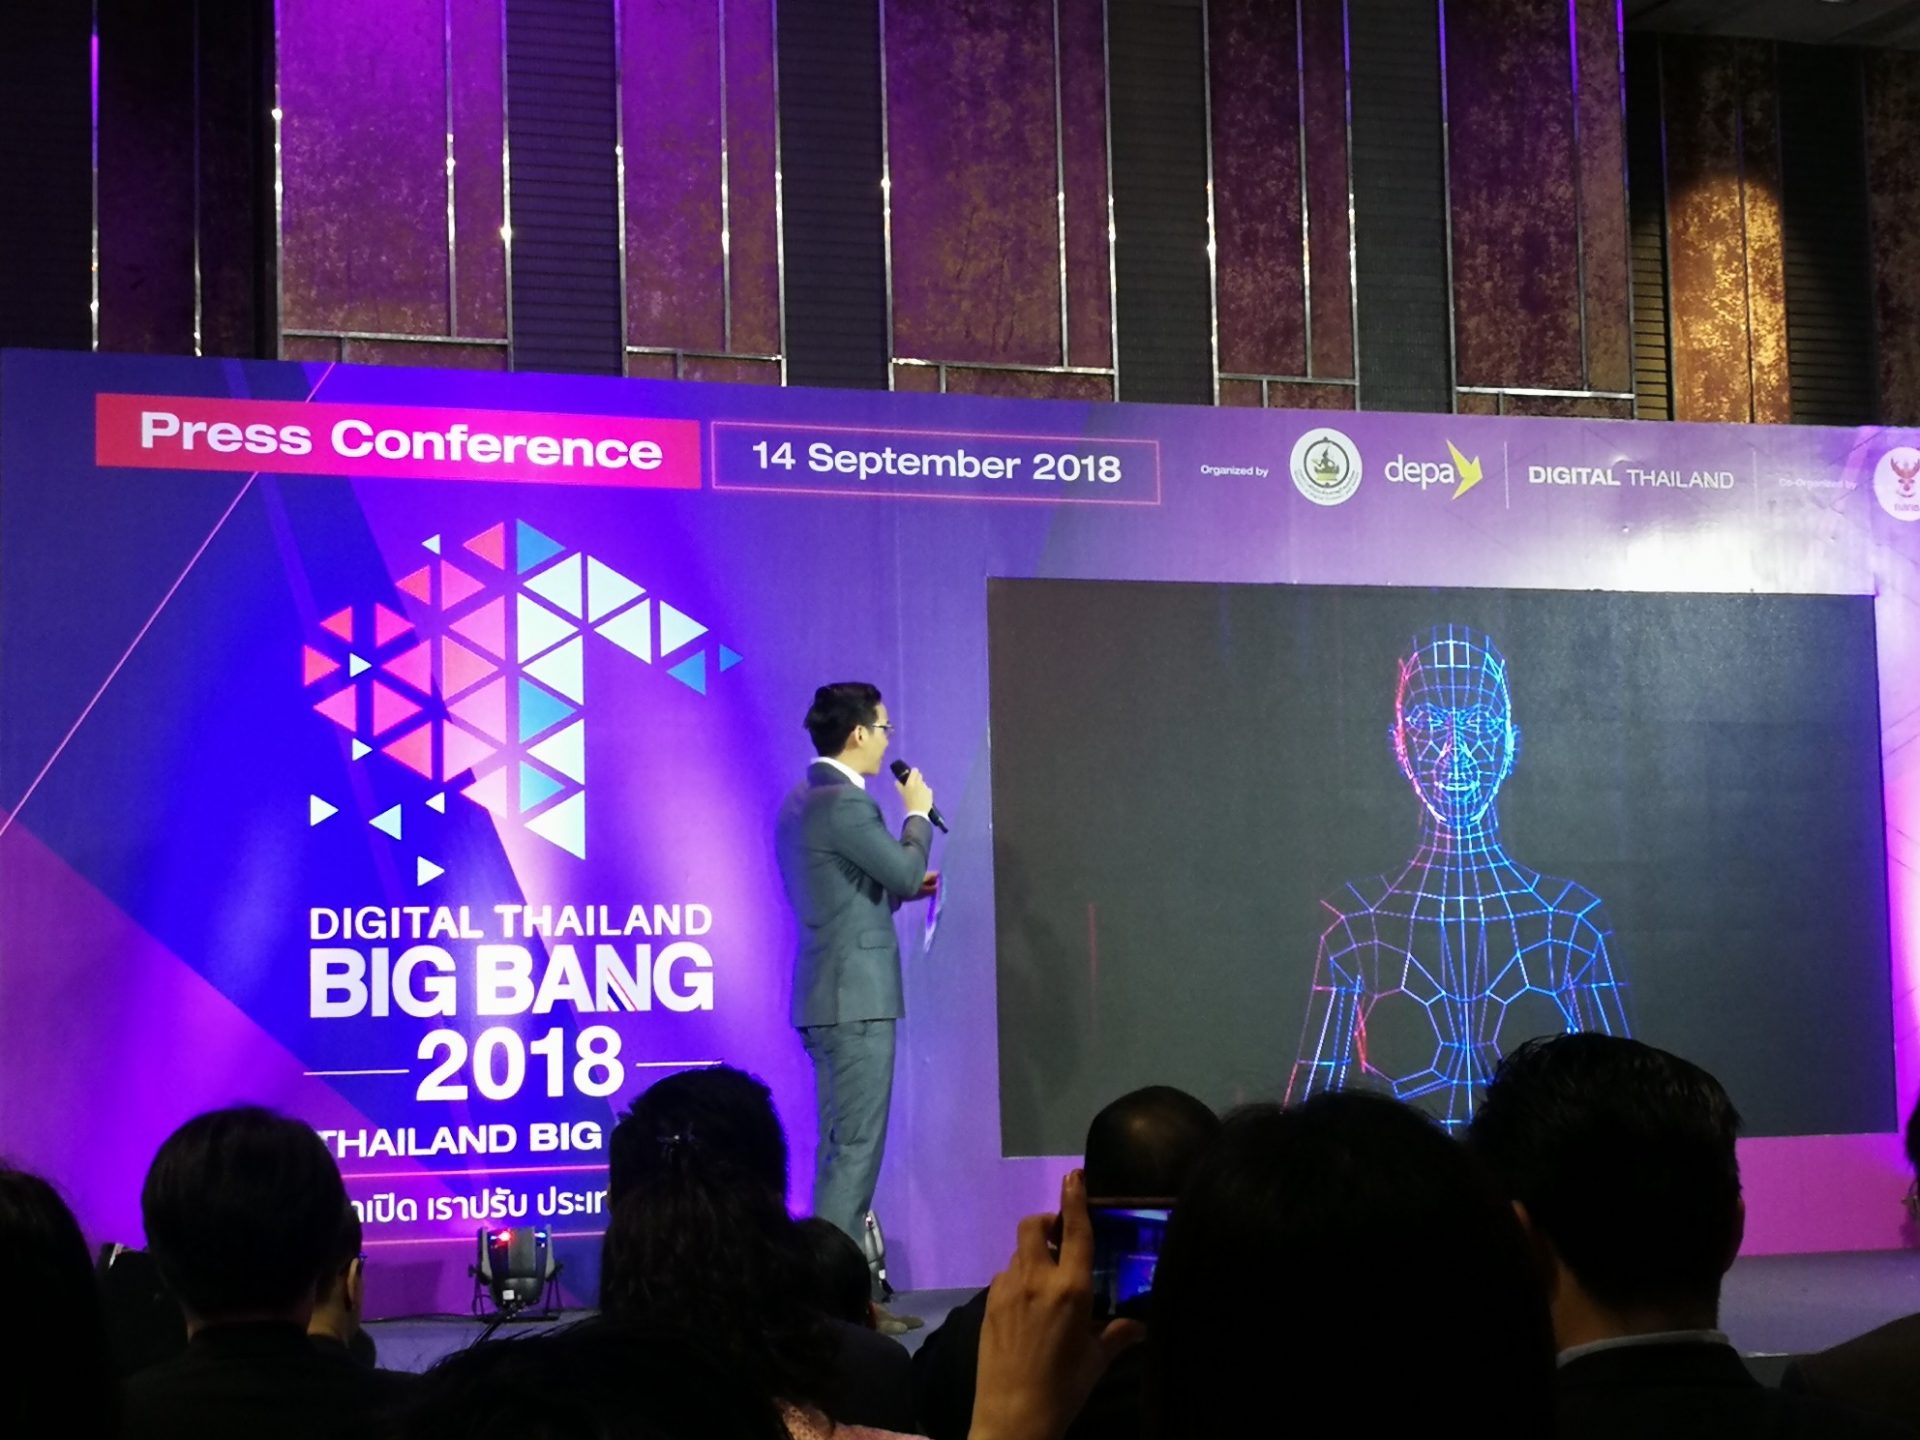 มหกรรมด้านดิจิทัลเทคโนโลยีระดับนานาชาติ Digital Thailand Big Bang 2018 “Thailand Big Data โลกเปิด เราปรับ ประเทศเปลี่ยน” 19 – 23 กันยายนนี้